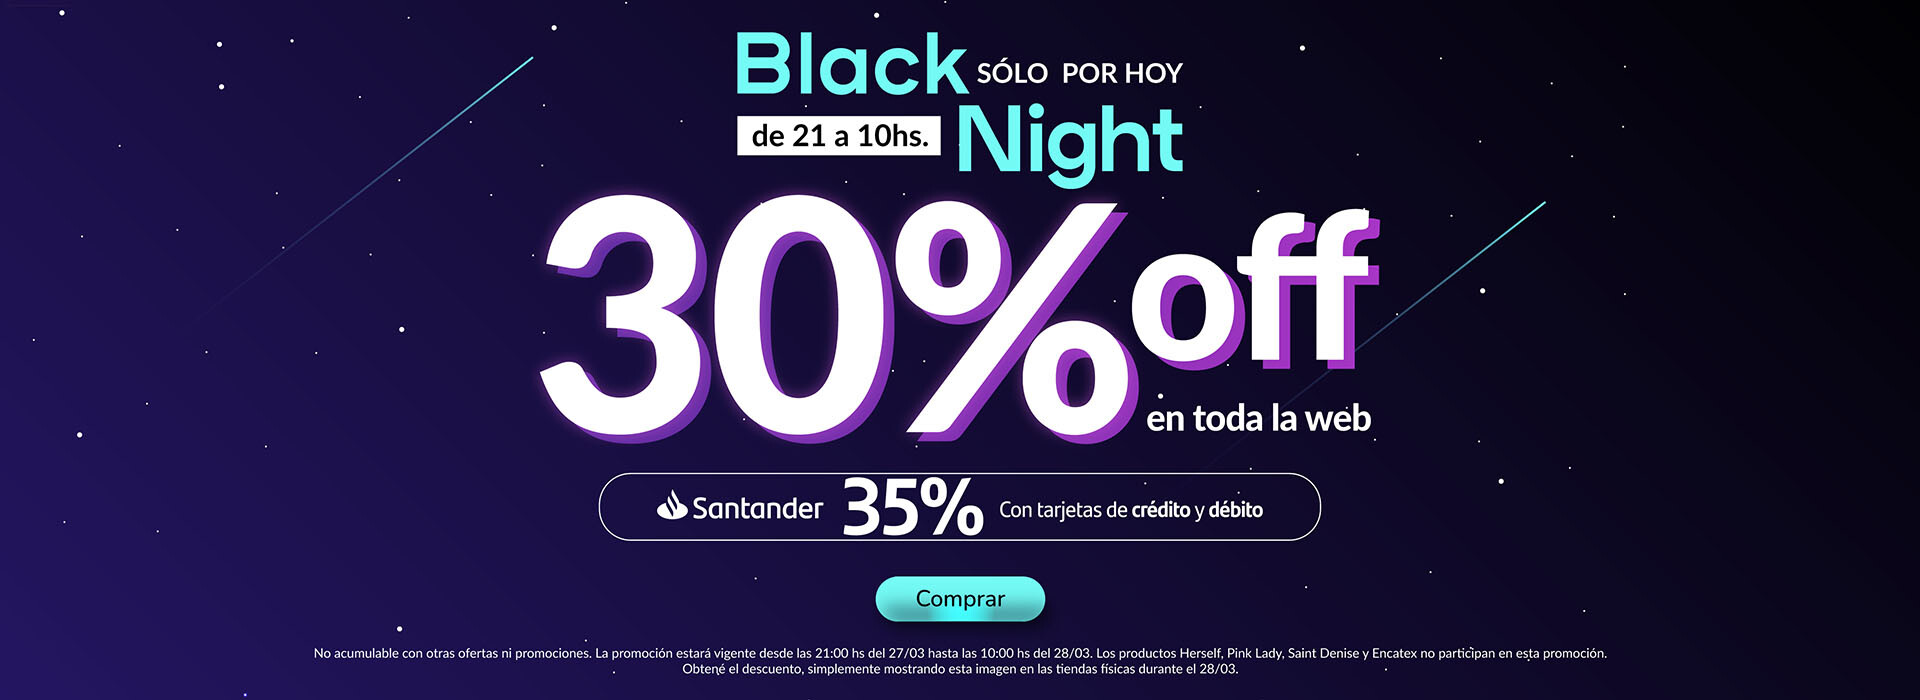 Black night con 30% OFF